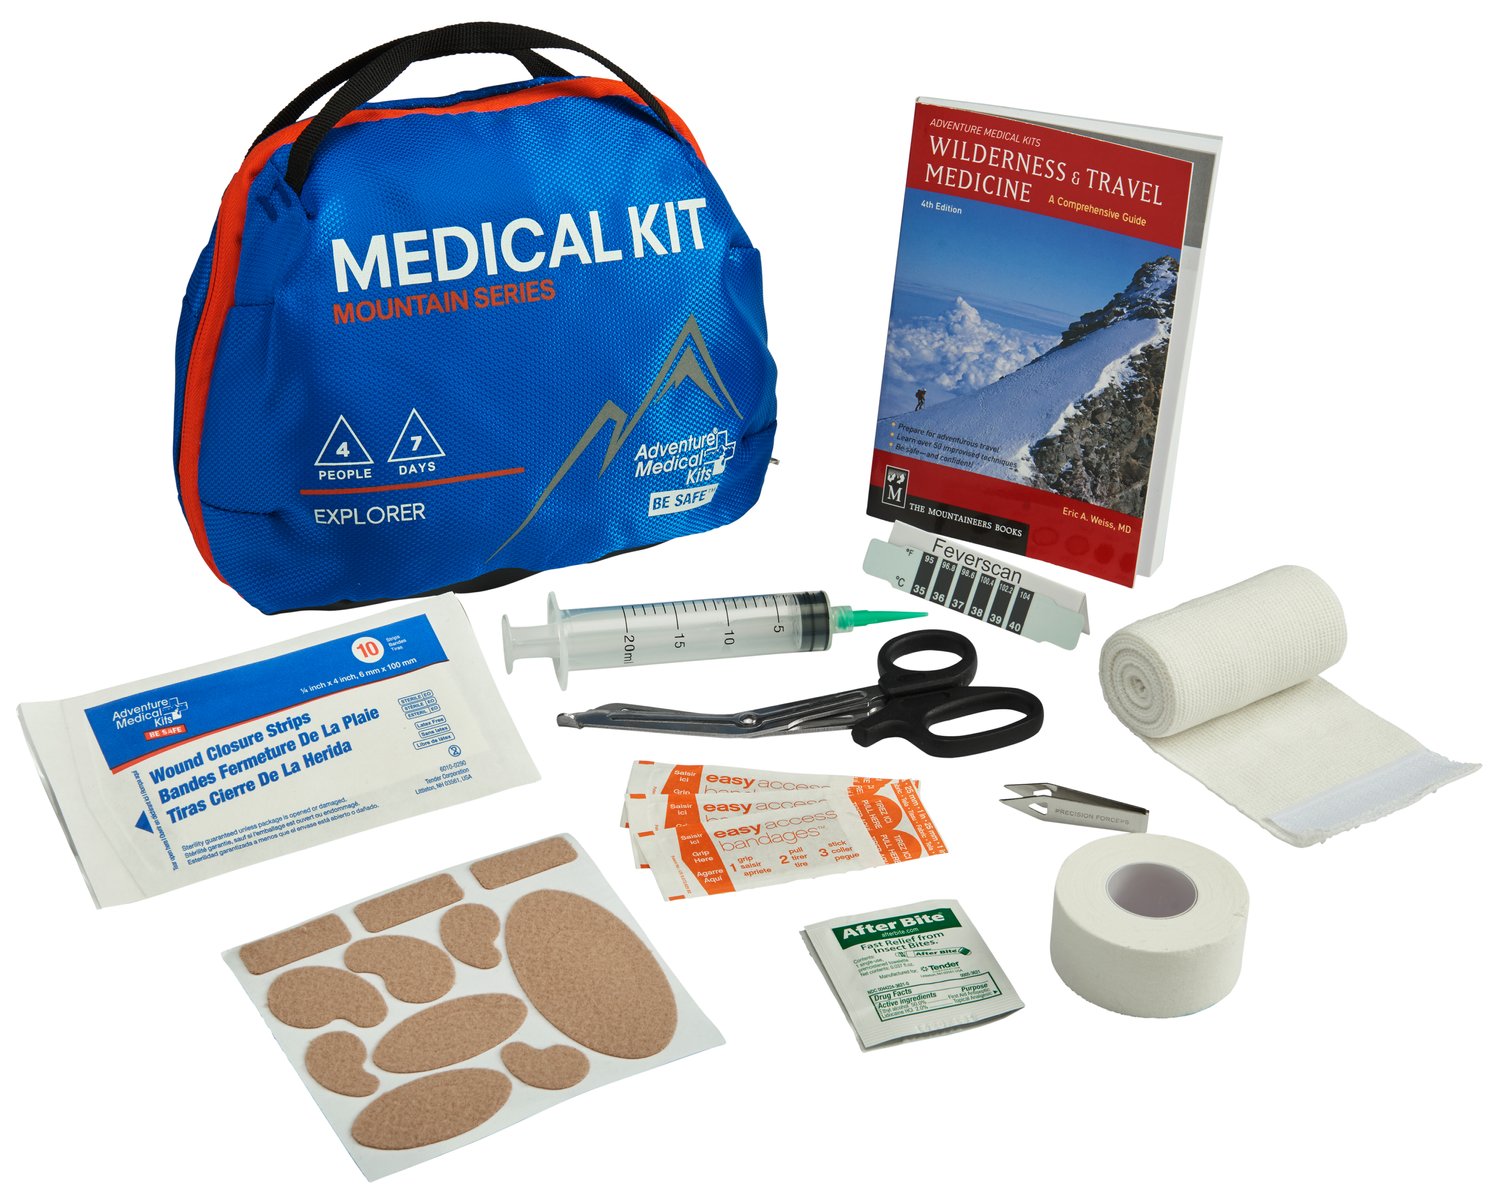 Mountain Series Medical Kit - Explorer — BMG